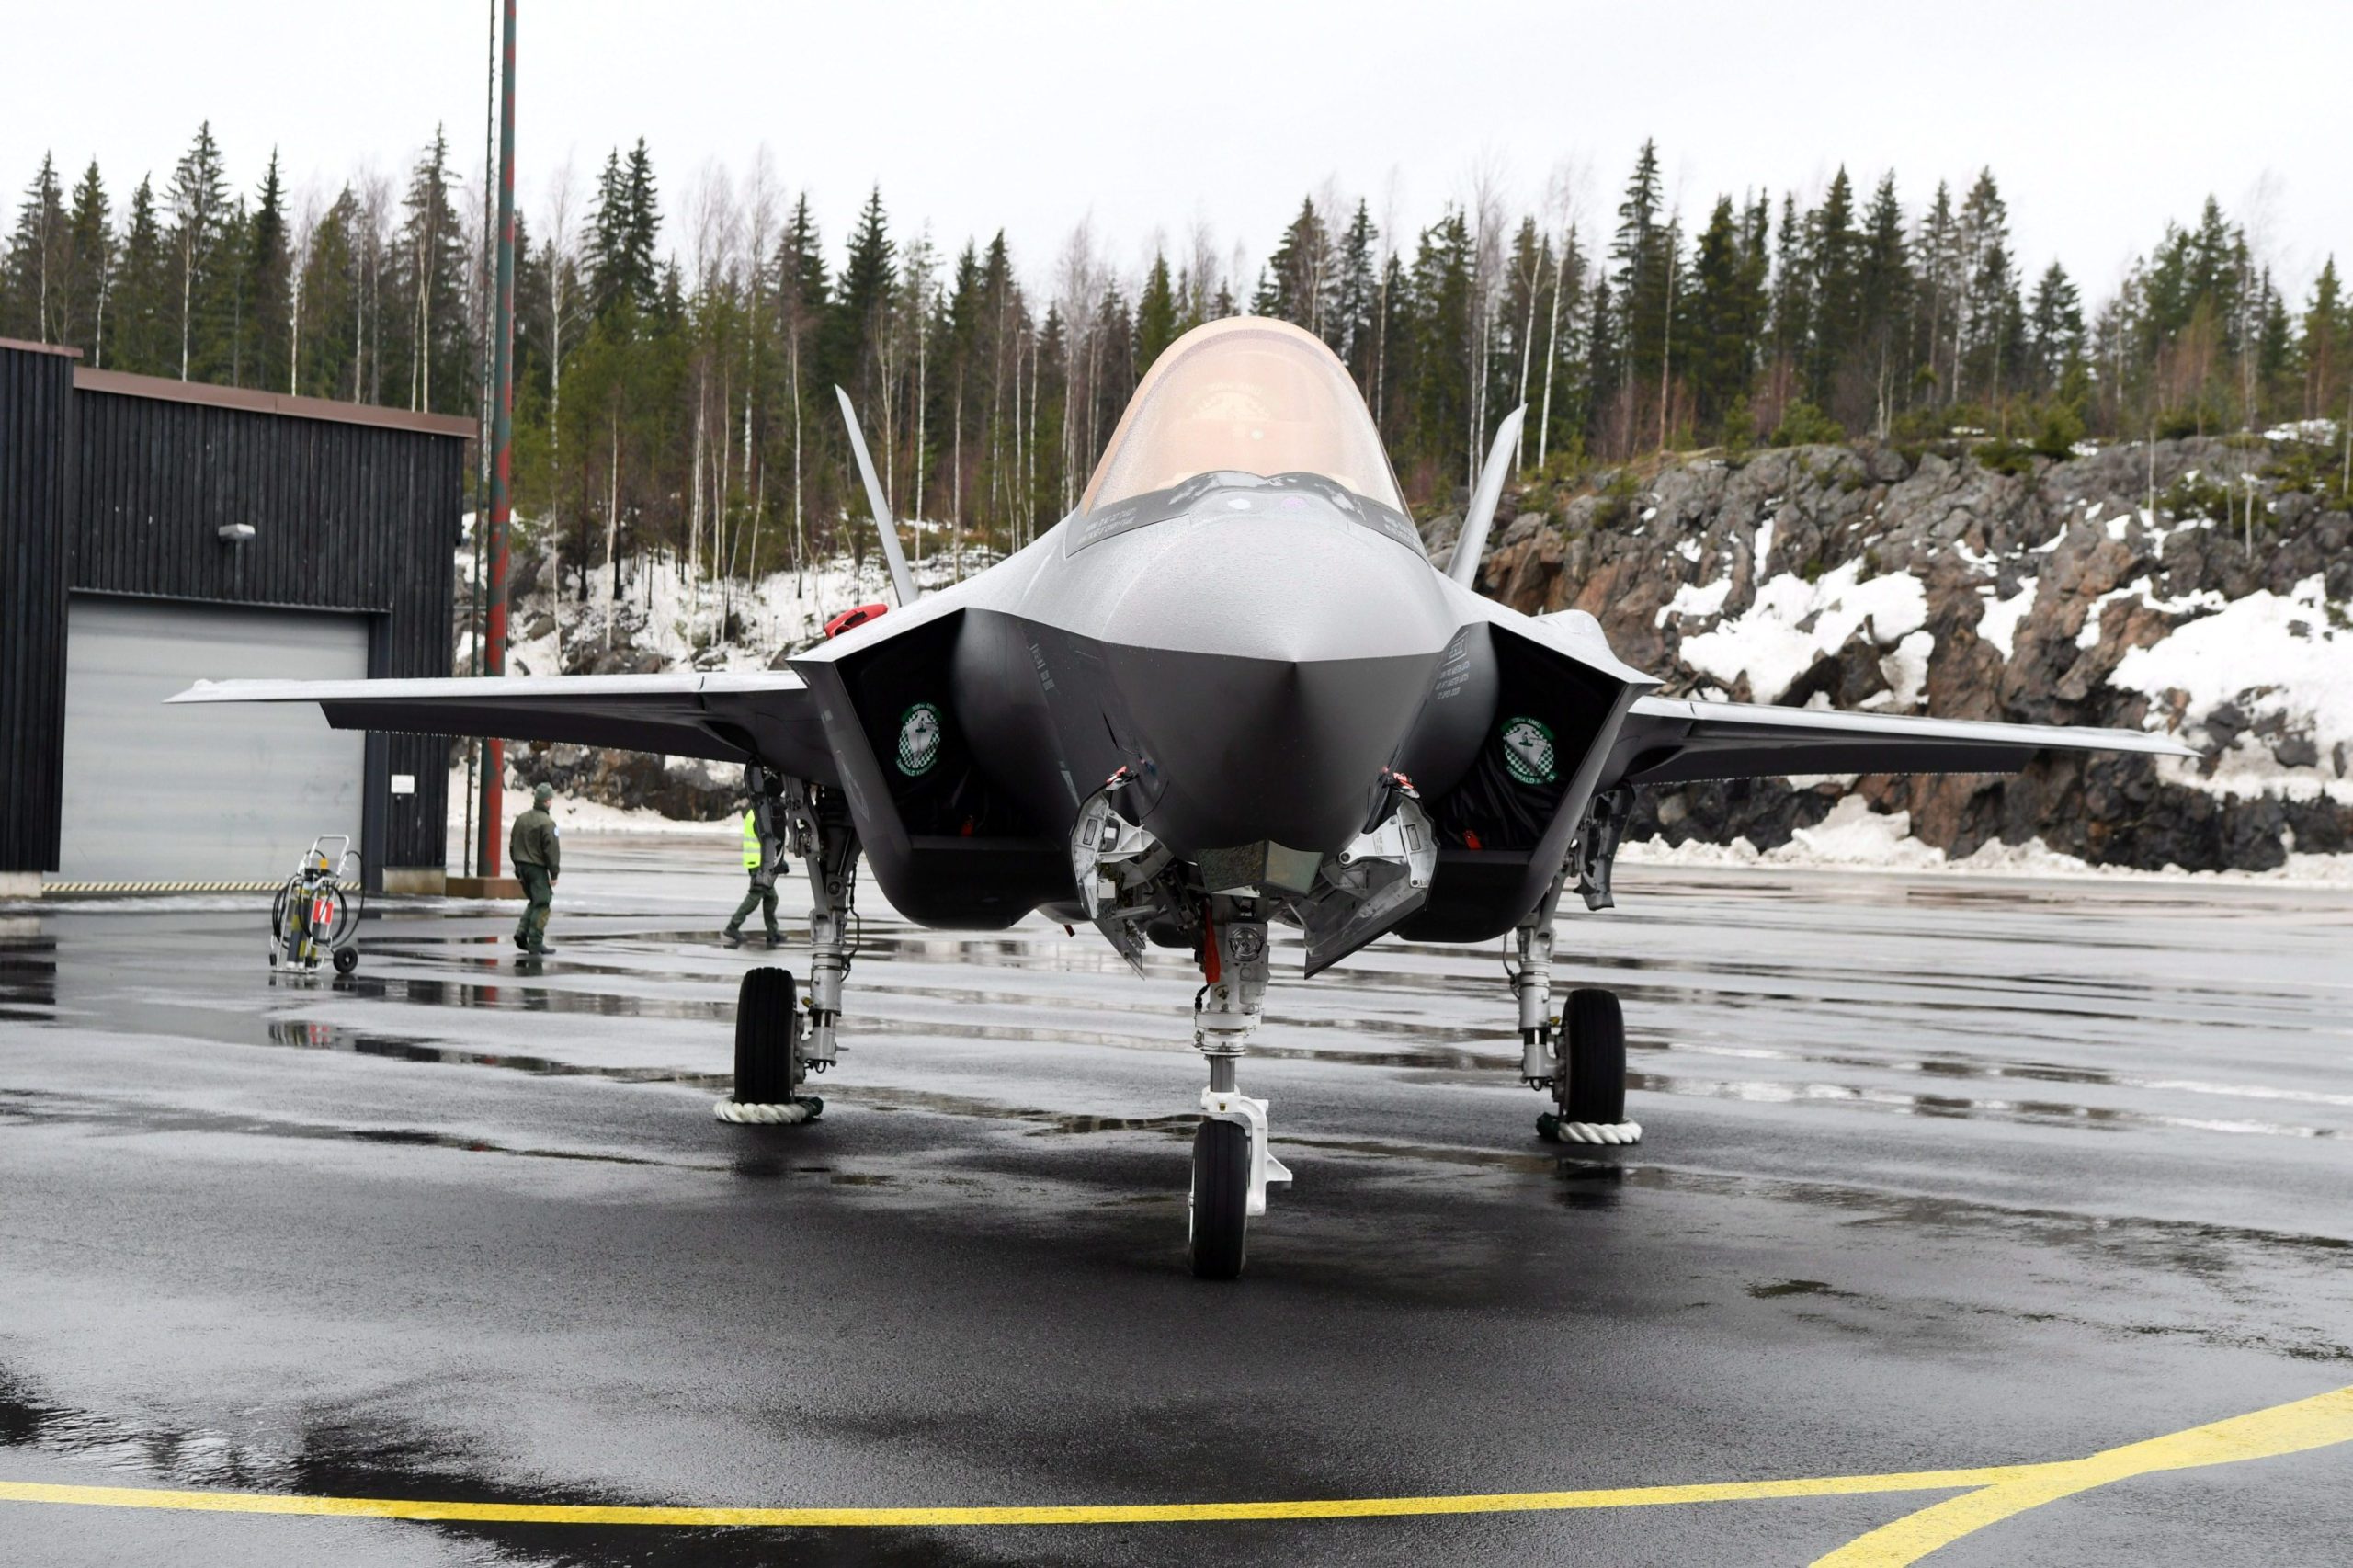 Lähteet: Myös Saksa ostaa F-35-hävittäjiä – Suomi teki päätöksen samoista  hävittäjistä joulukuussa 